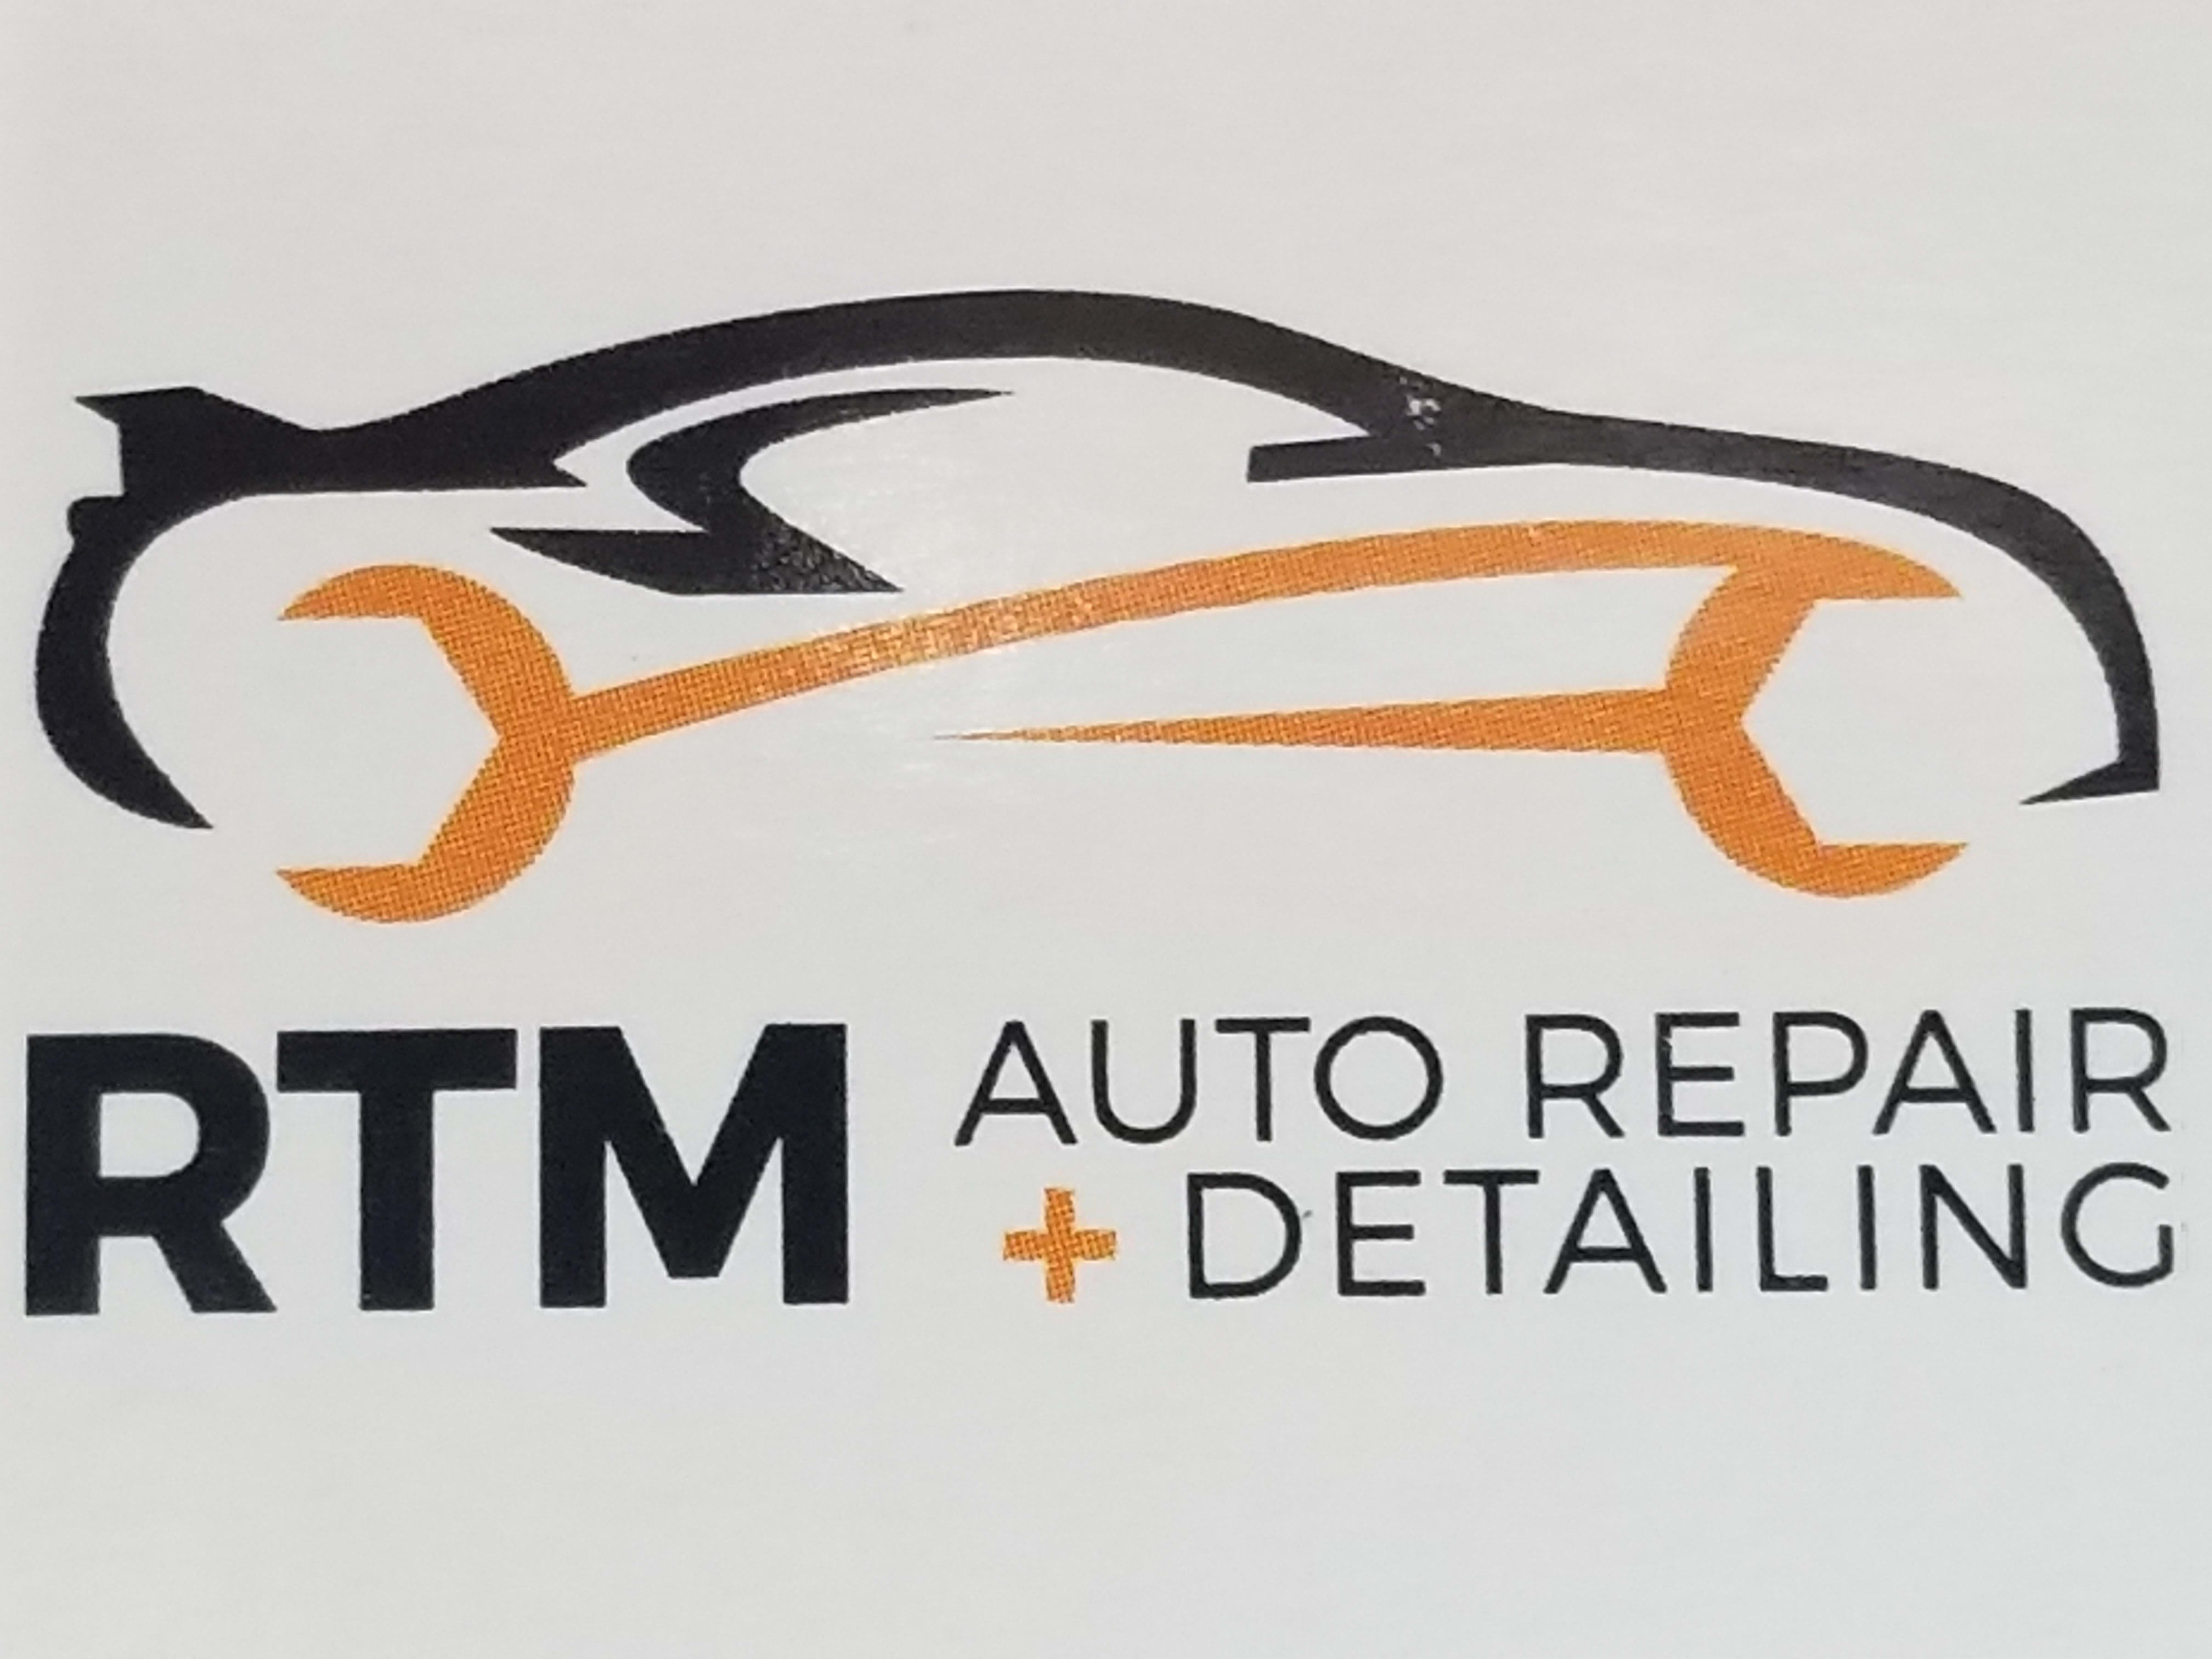 RTM Complete Auto Repair